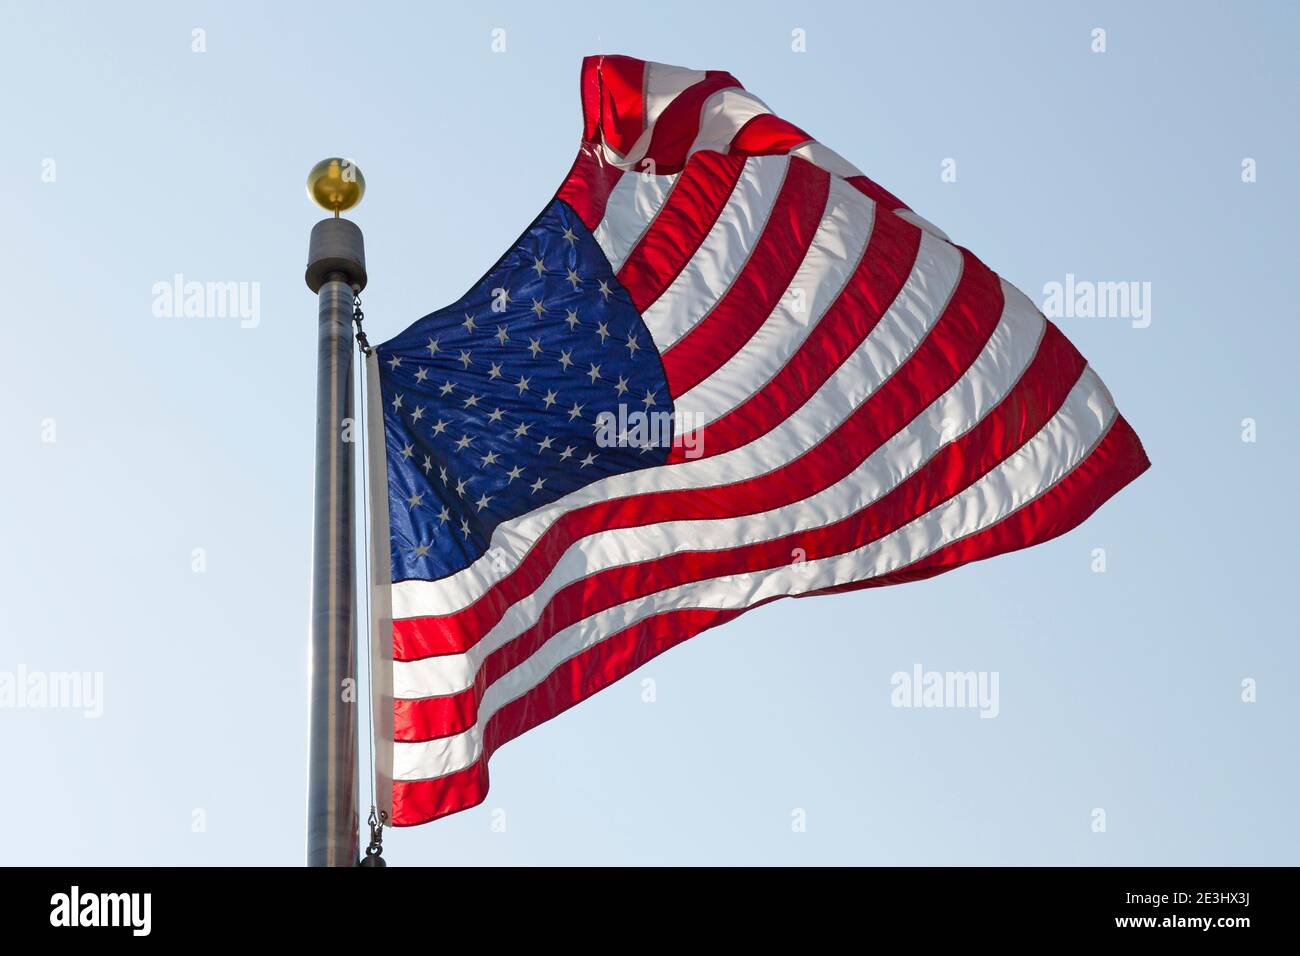 Drapeau américain flamant à Washington DC. Le drapeau national américain est connu les étoiles et les rayures, comme la gloire ancienne, et la bannière Star-Spangled. Banque D'Images